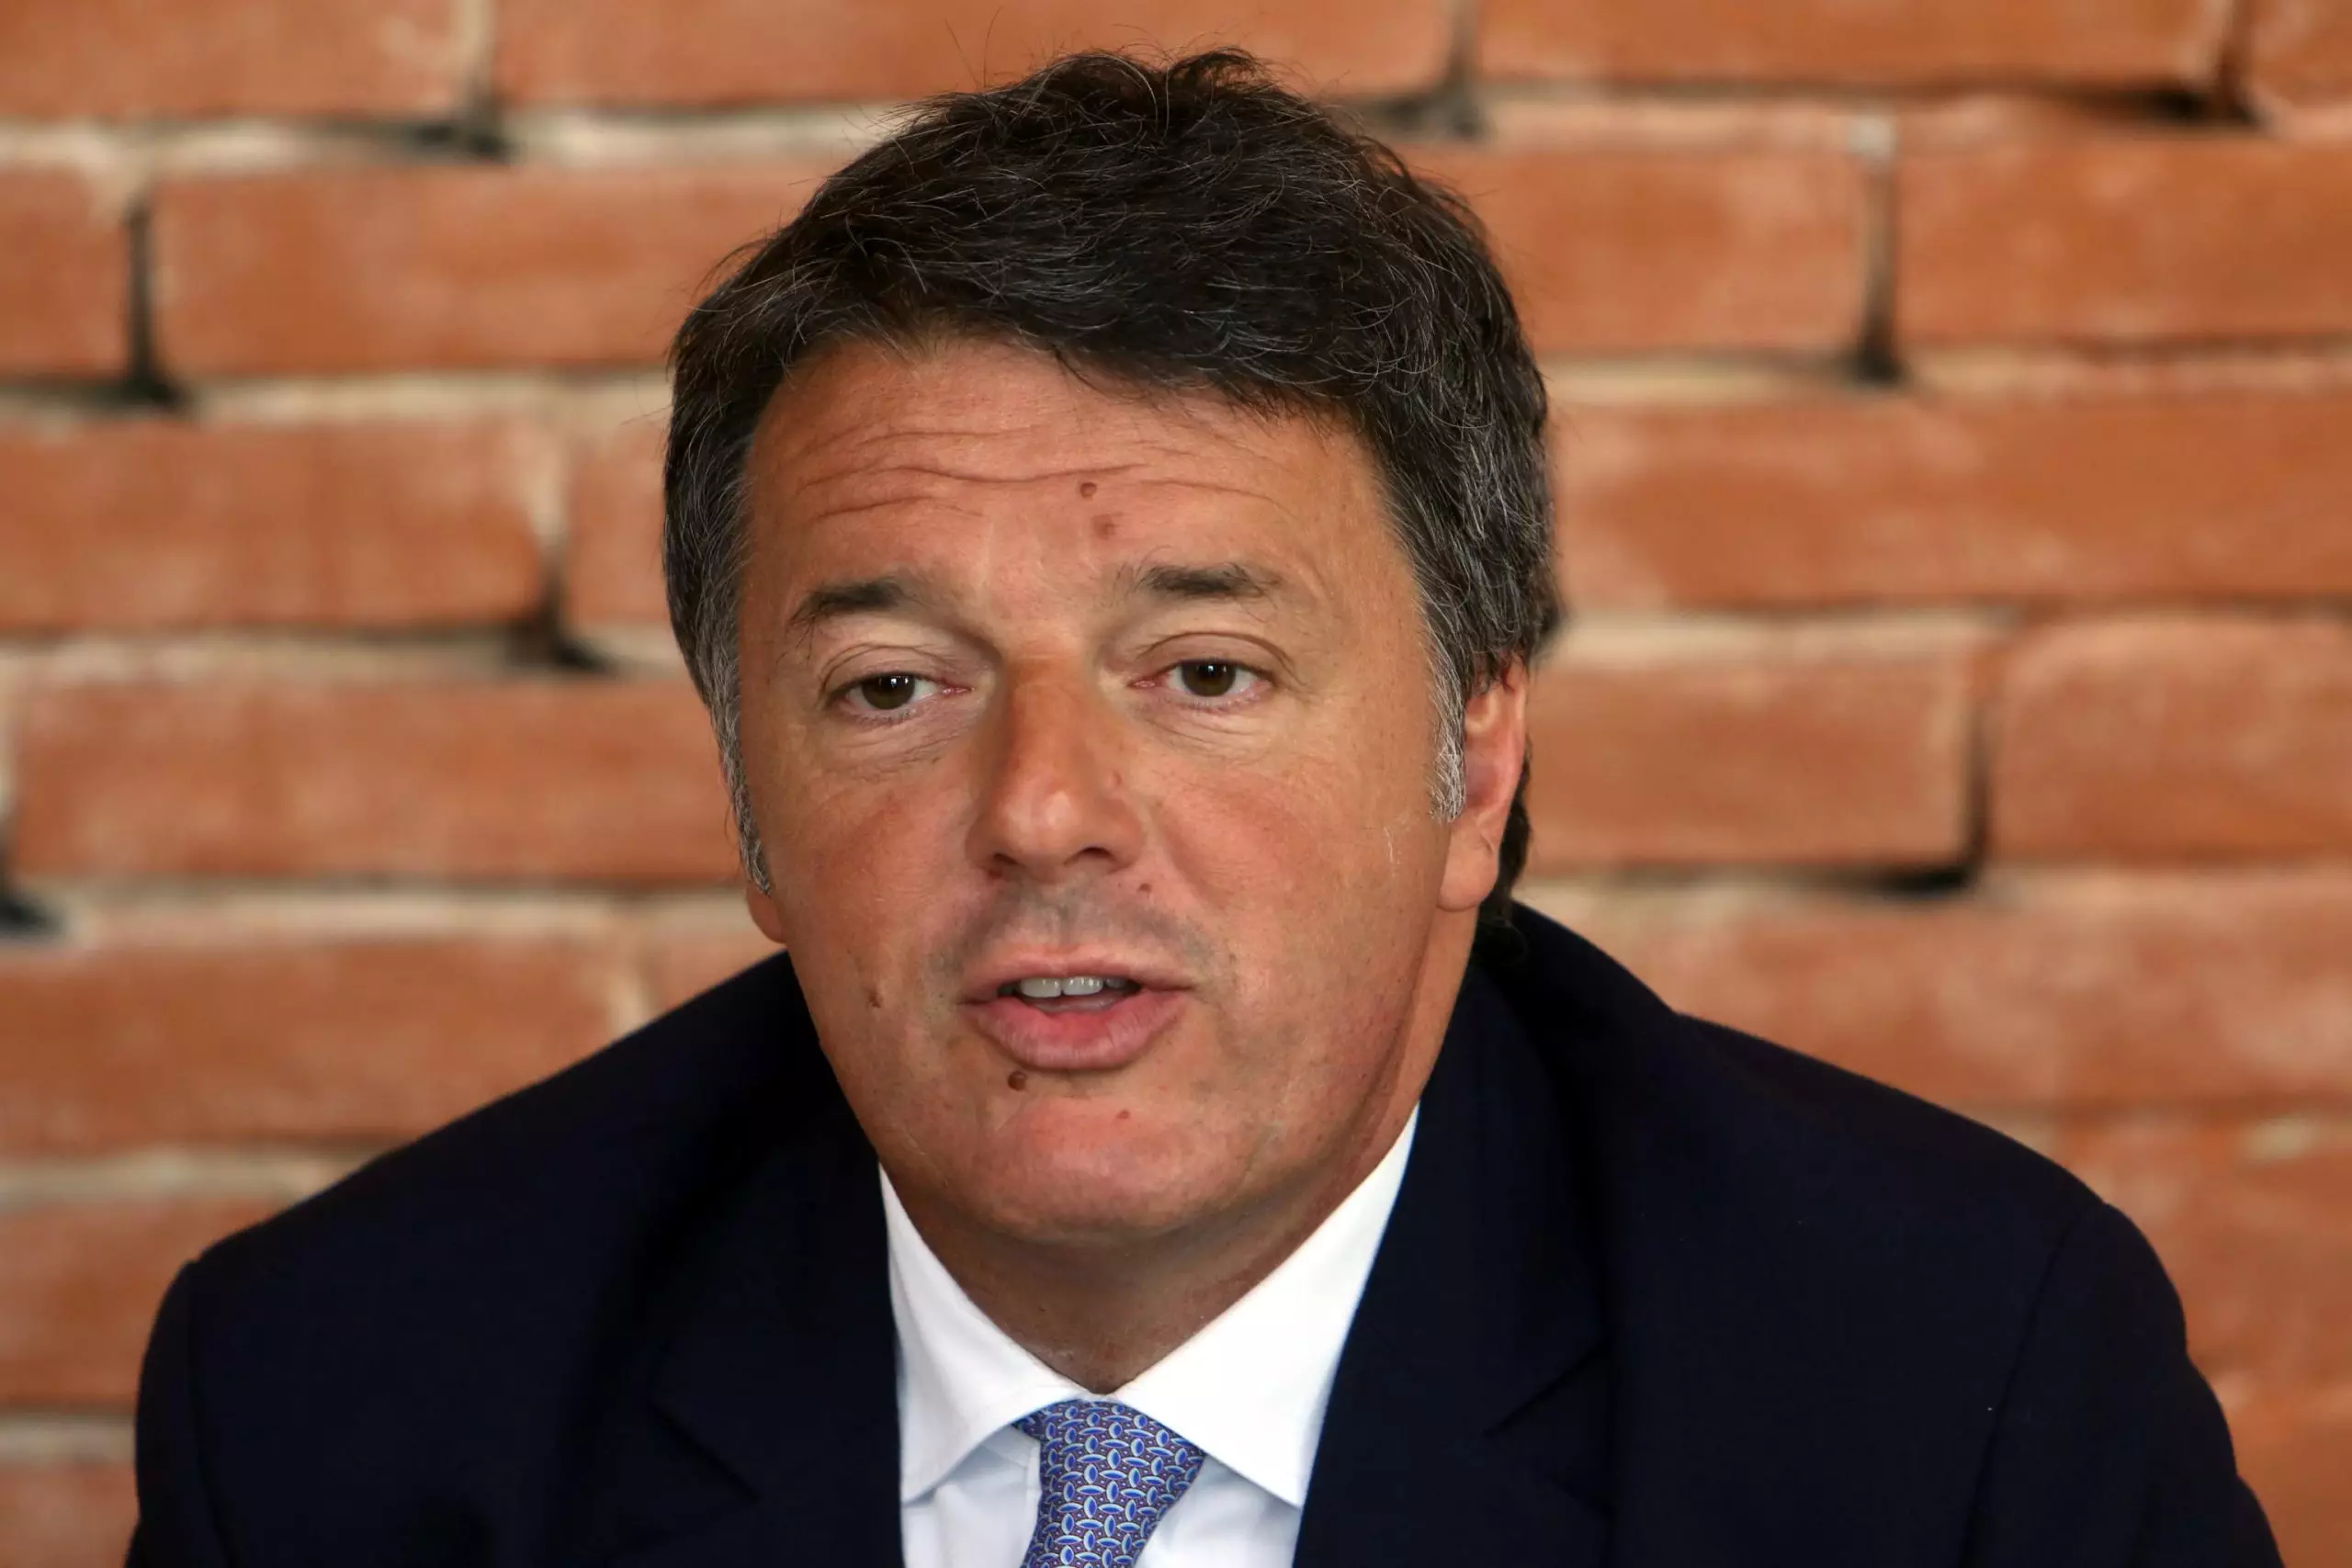 Renzi attacca il Pd: "Vogliono aumentare le tasse, molti elettori voteranno noi"